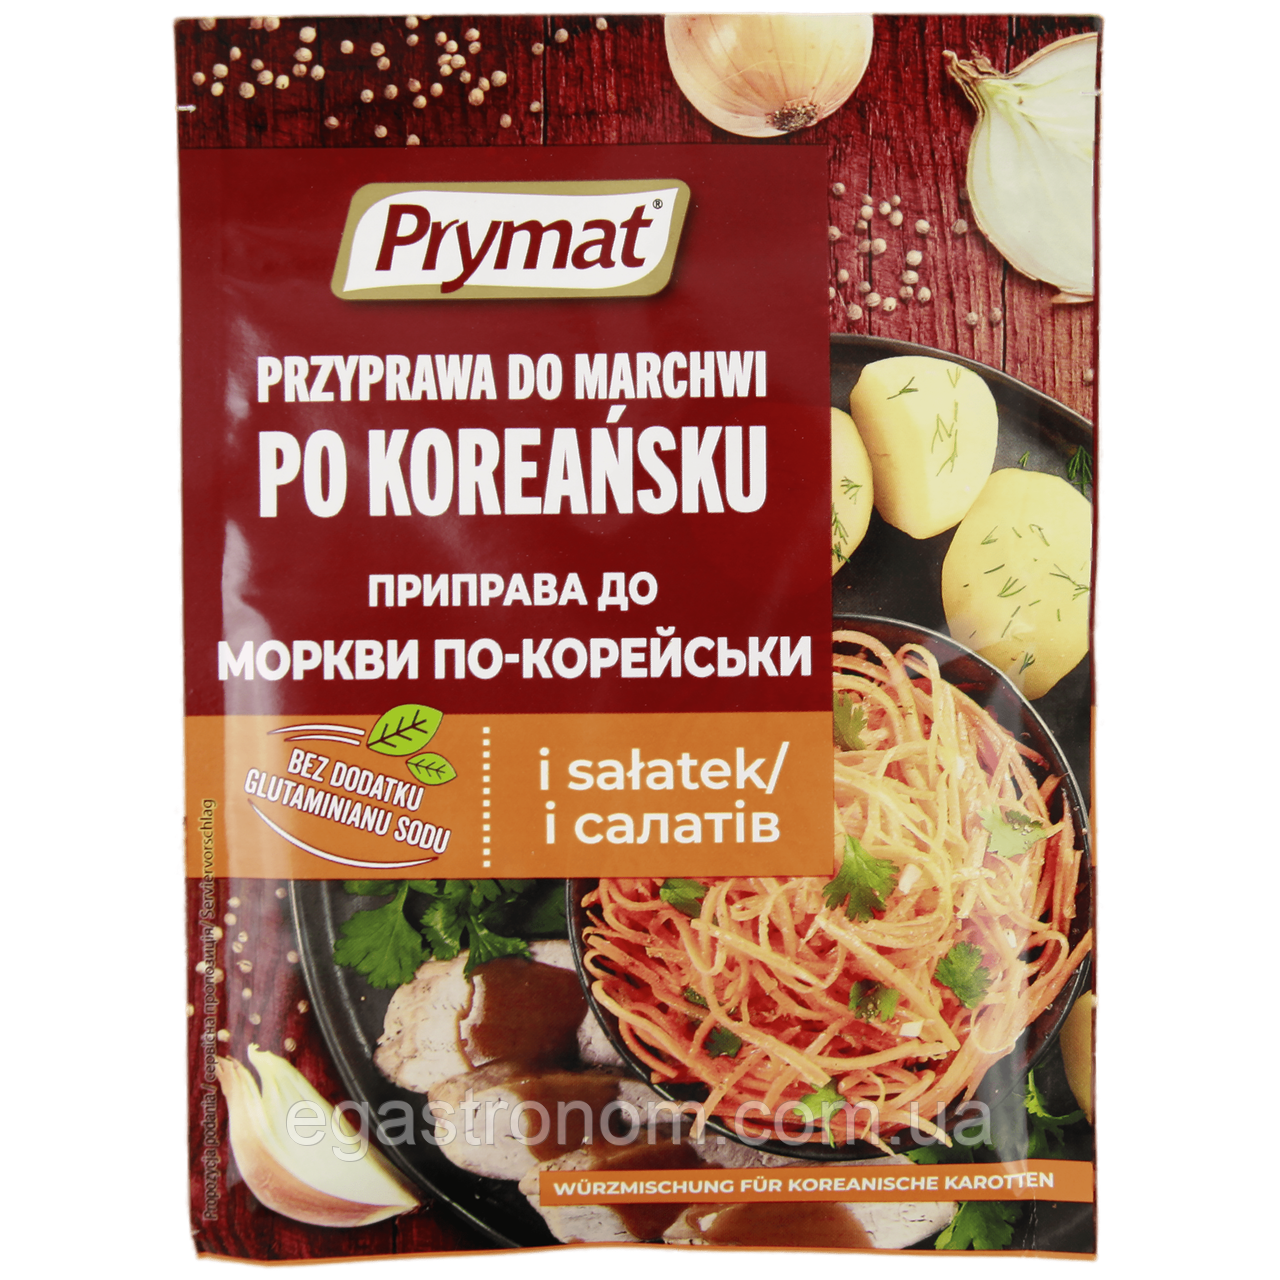 Приправа до моркви по-корейськи Примат Prymat 25g 25шт/ящ (Код: 00-00014589)